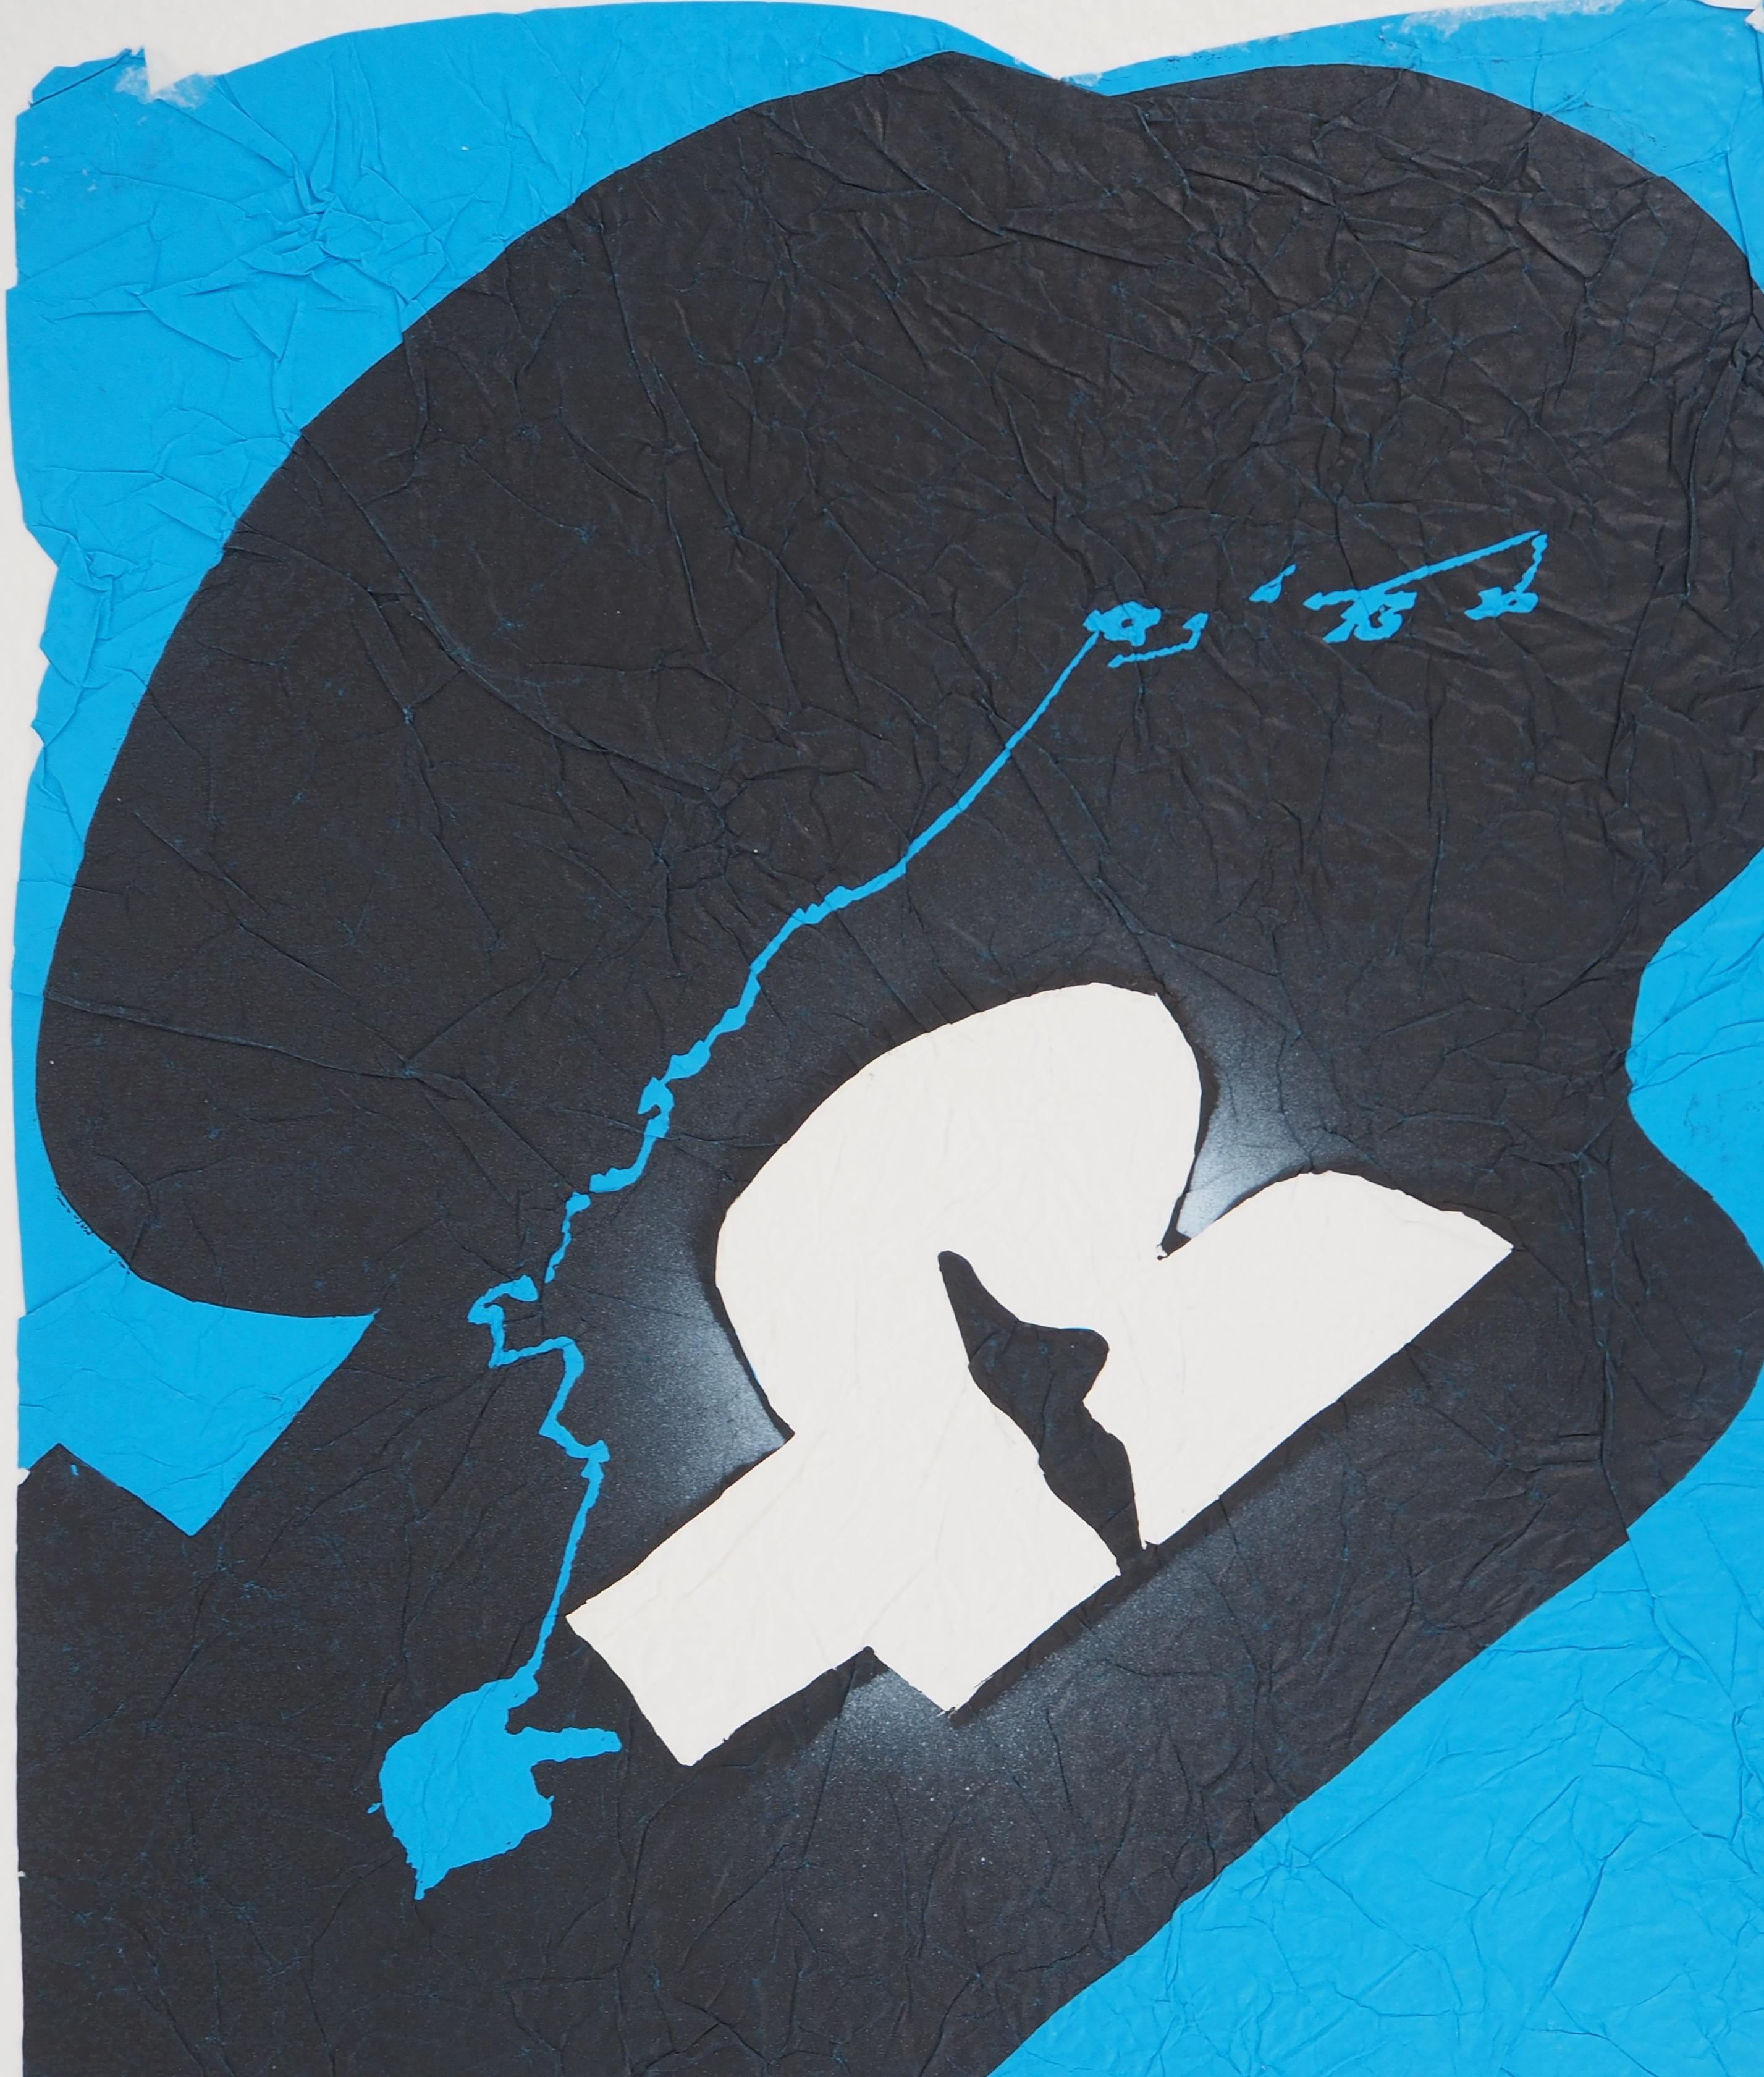 Ladislaus Kijno
Verstrichene Zeit in Blau

Siebdruck auf gerilltem Papier, aufgetragen auf Pergament
Veredelt mit Acrylmalerei
Vollständig von der Künstlerin handgefertigt 
Handsigniert mit Bleistift
Für einen Satz von 9 Stück (jedes Stück ist